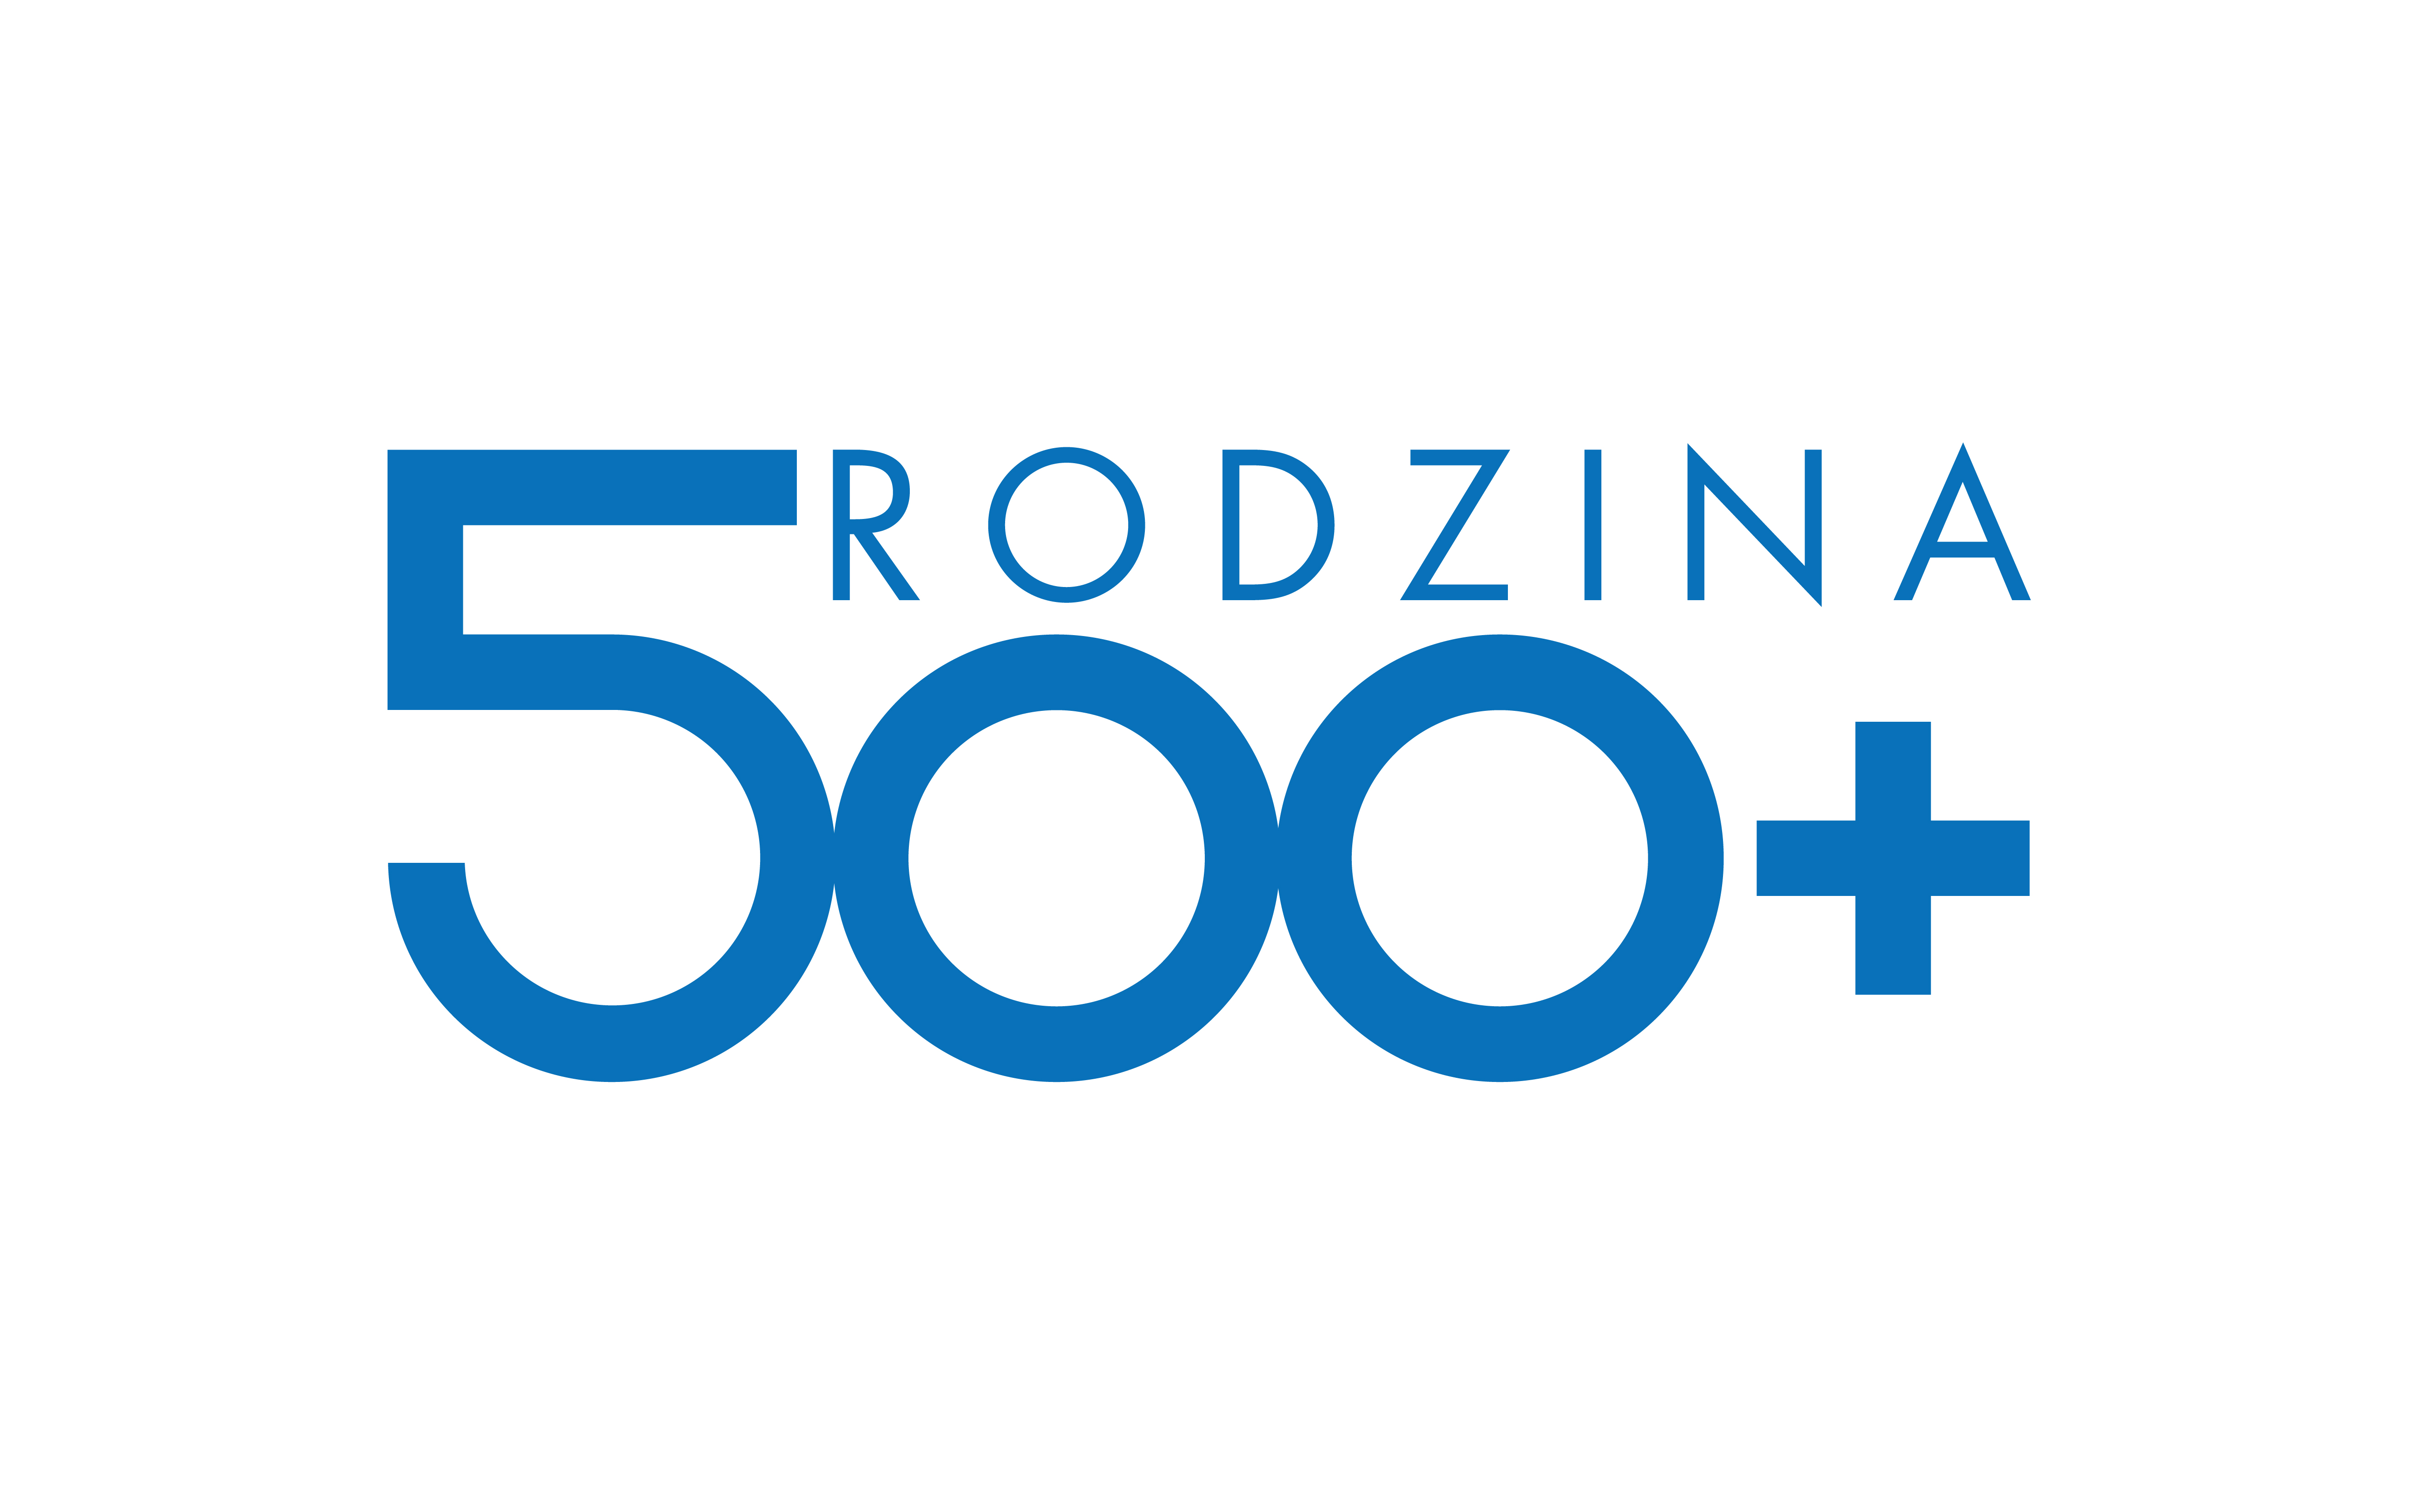  logo programu 500 plus napis zawiera zwrot pięćset plus